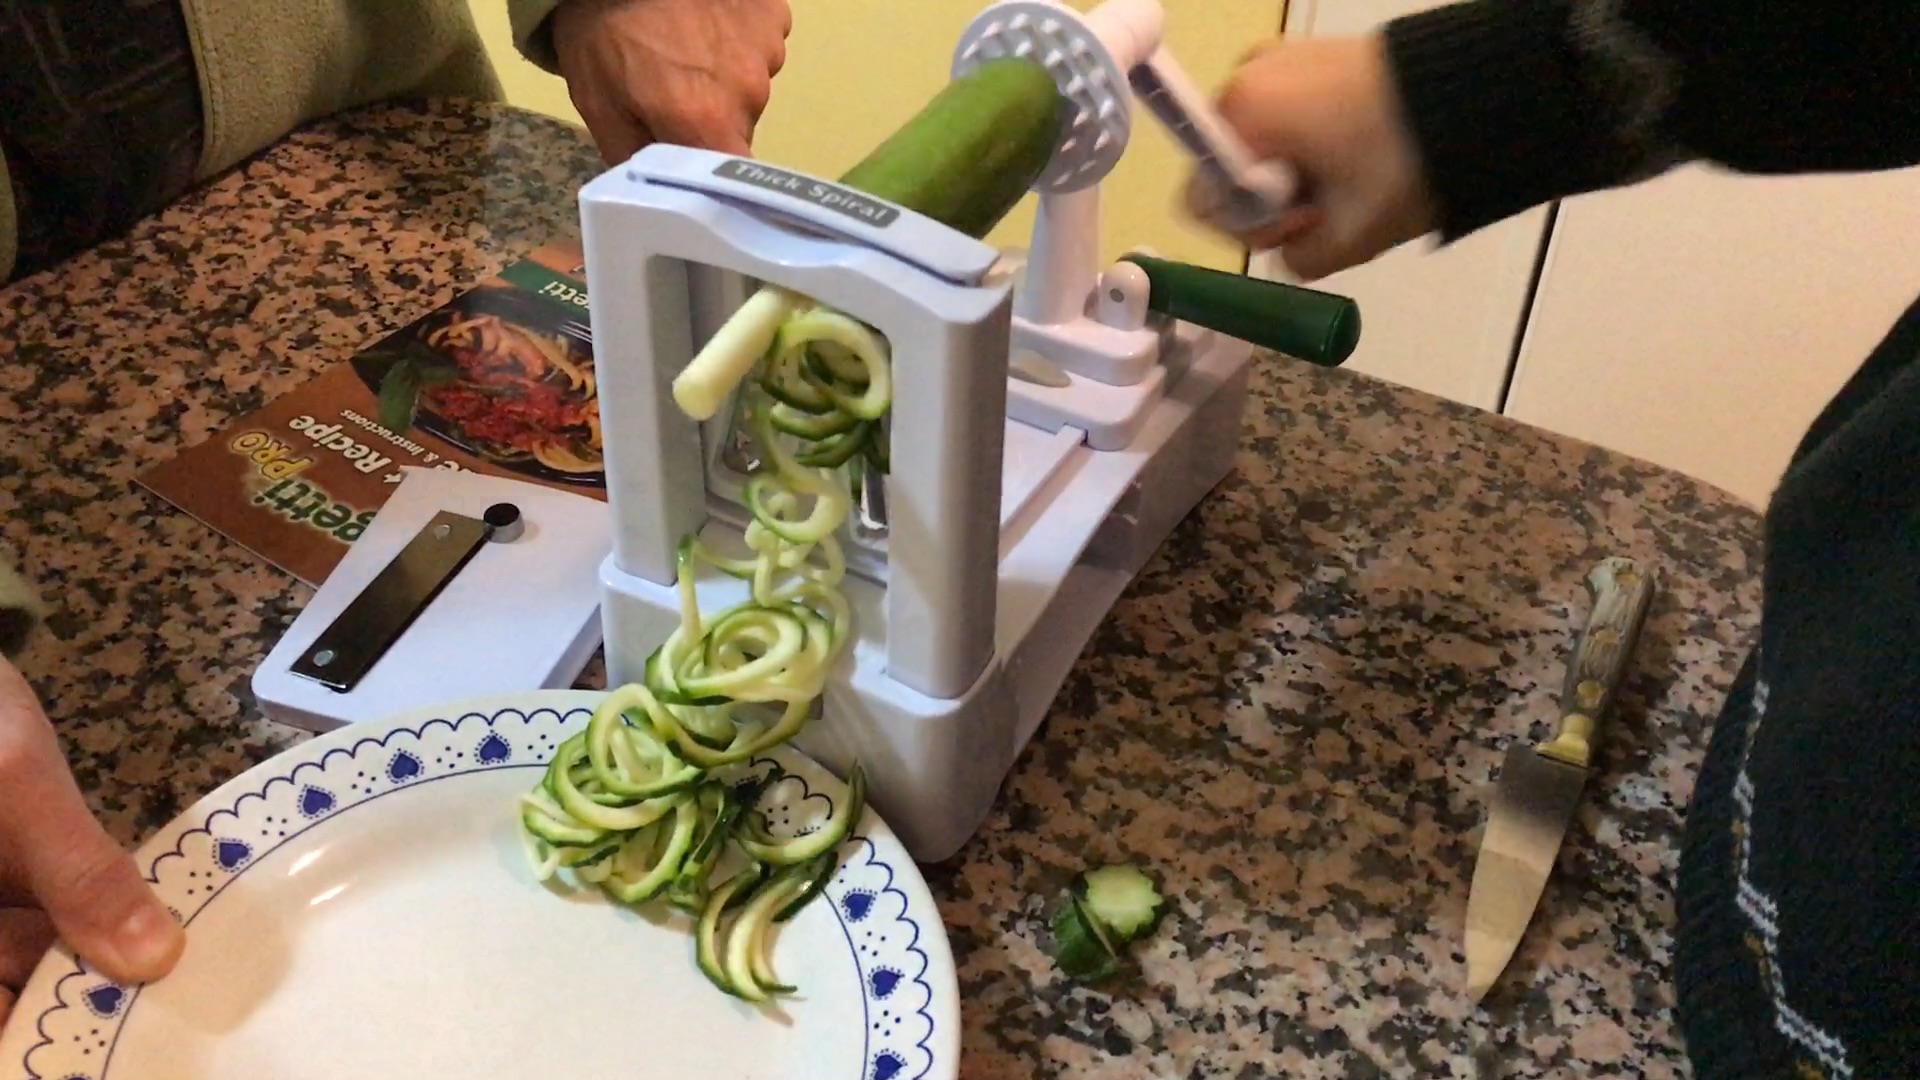 Vegetti Spiral Vegetable Slicer Cutter, Makes Veggie Pasta, As Seen On TV